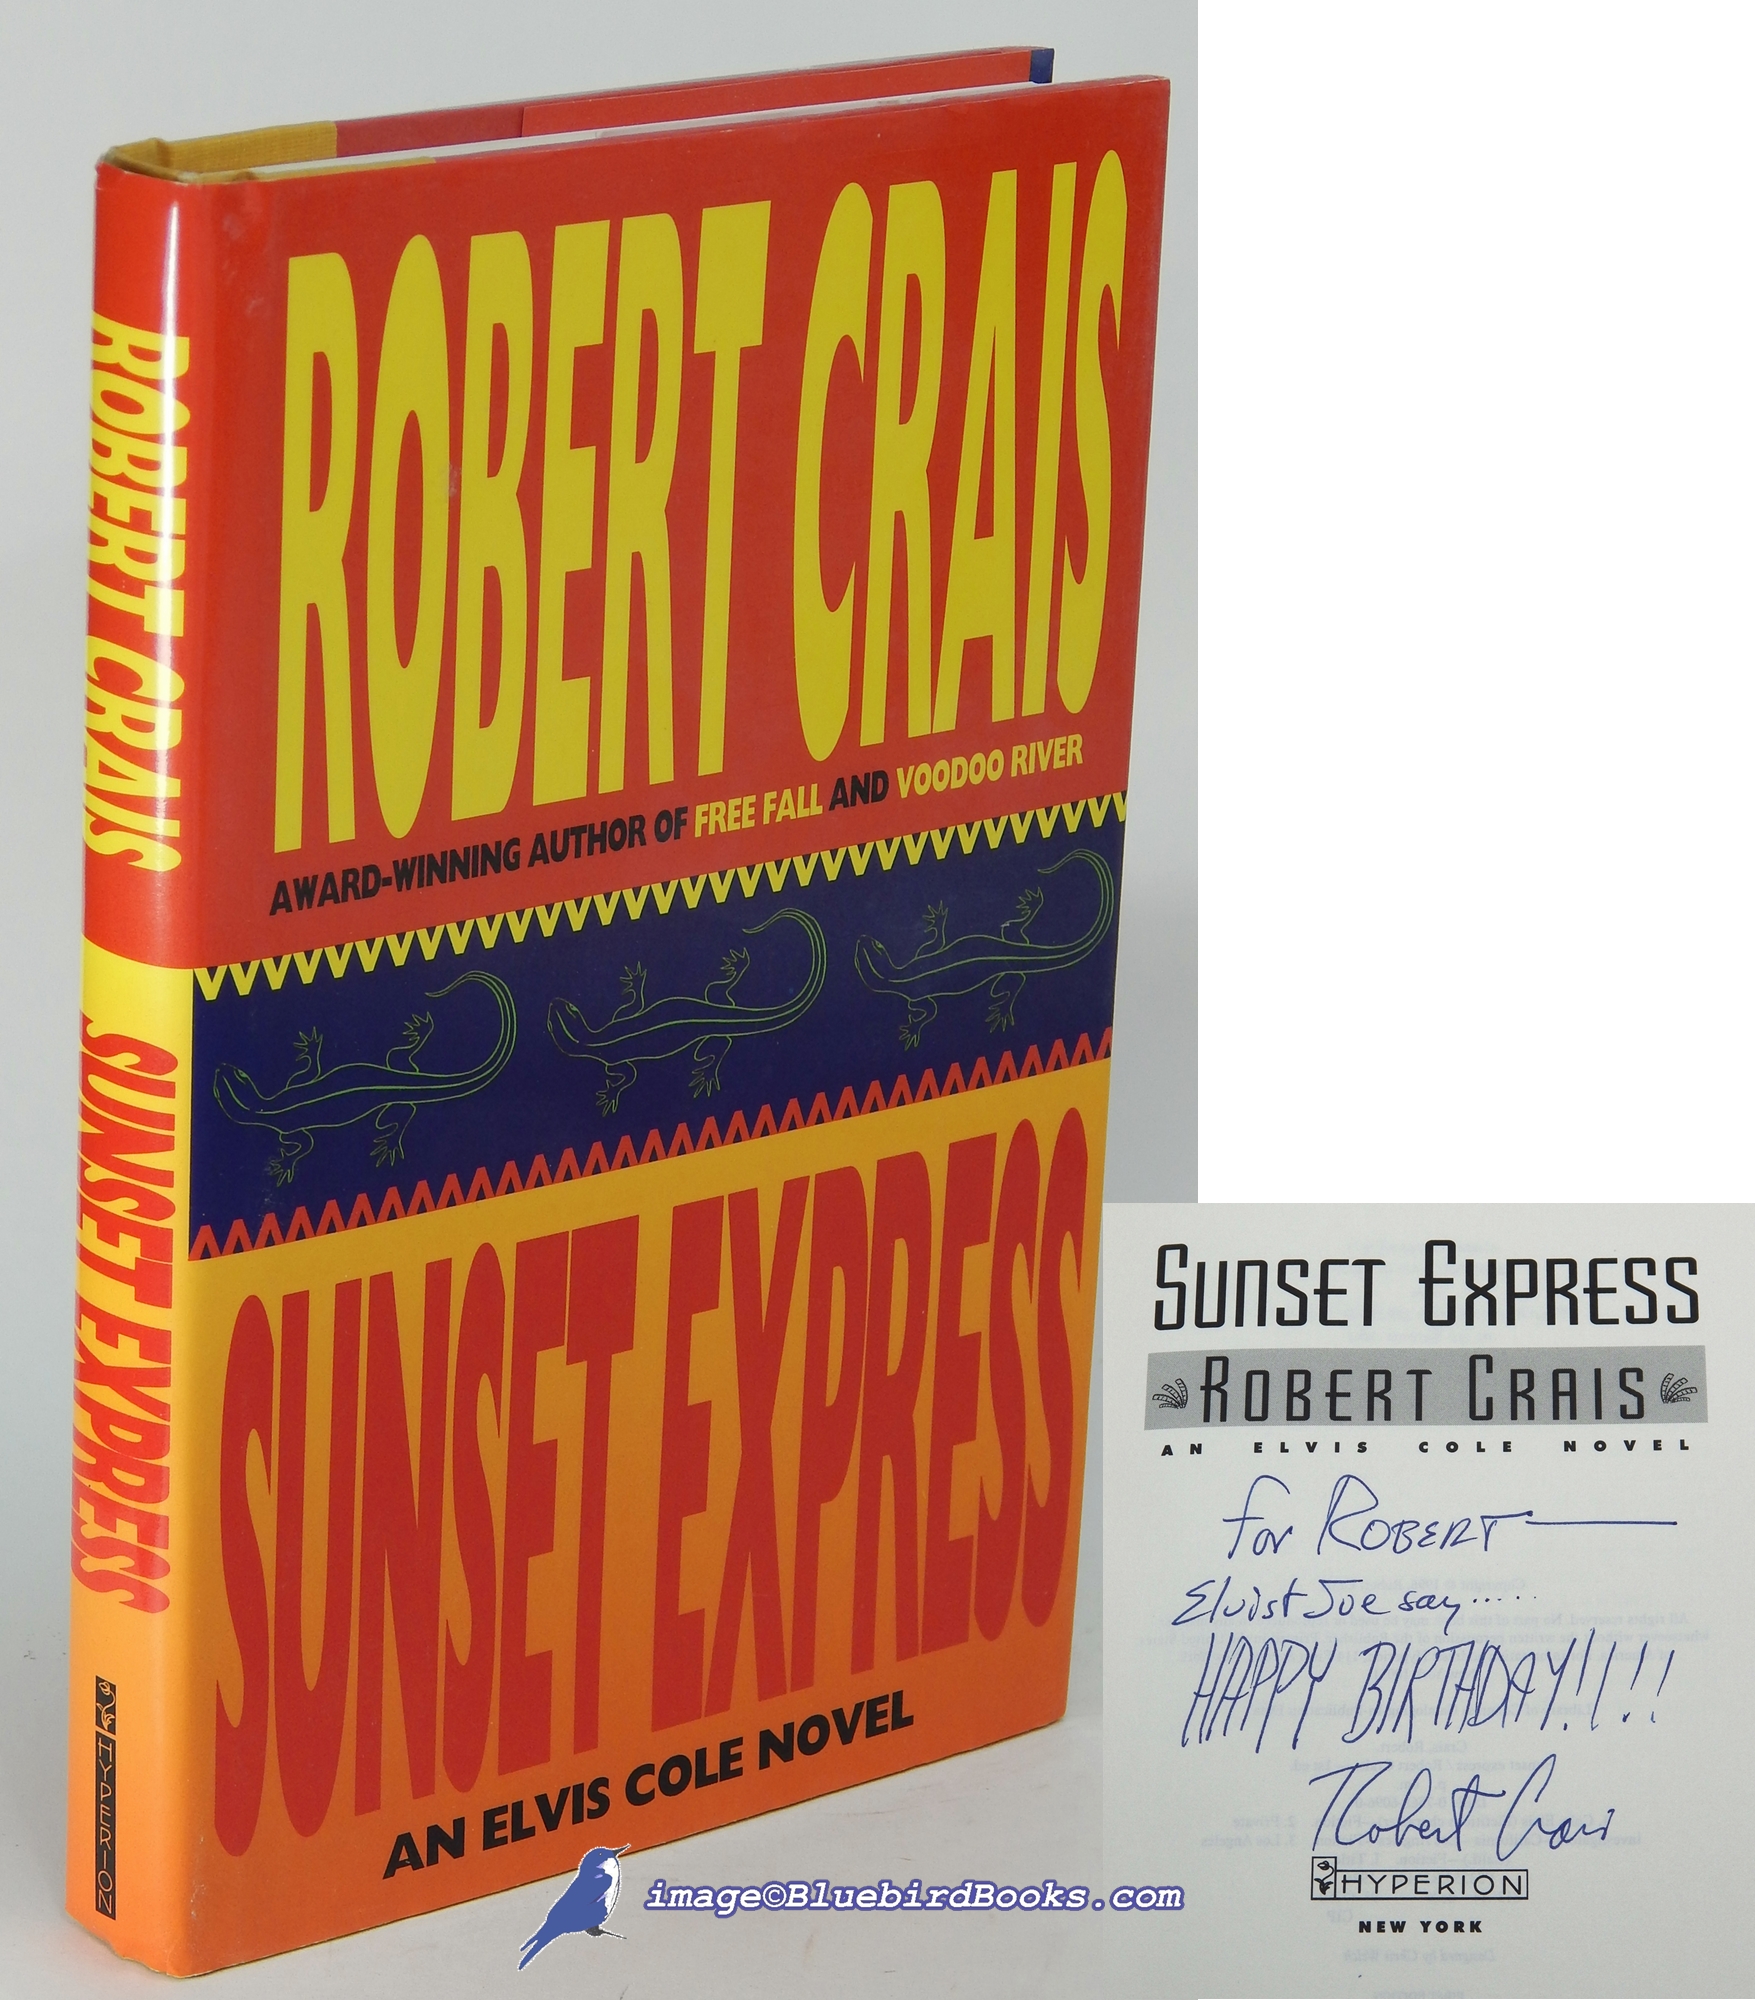 CRAIS, ROBERT - Sunset Express: An Elvis Cole Novel